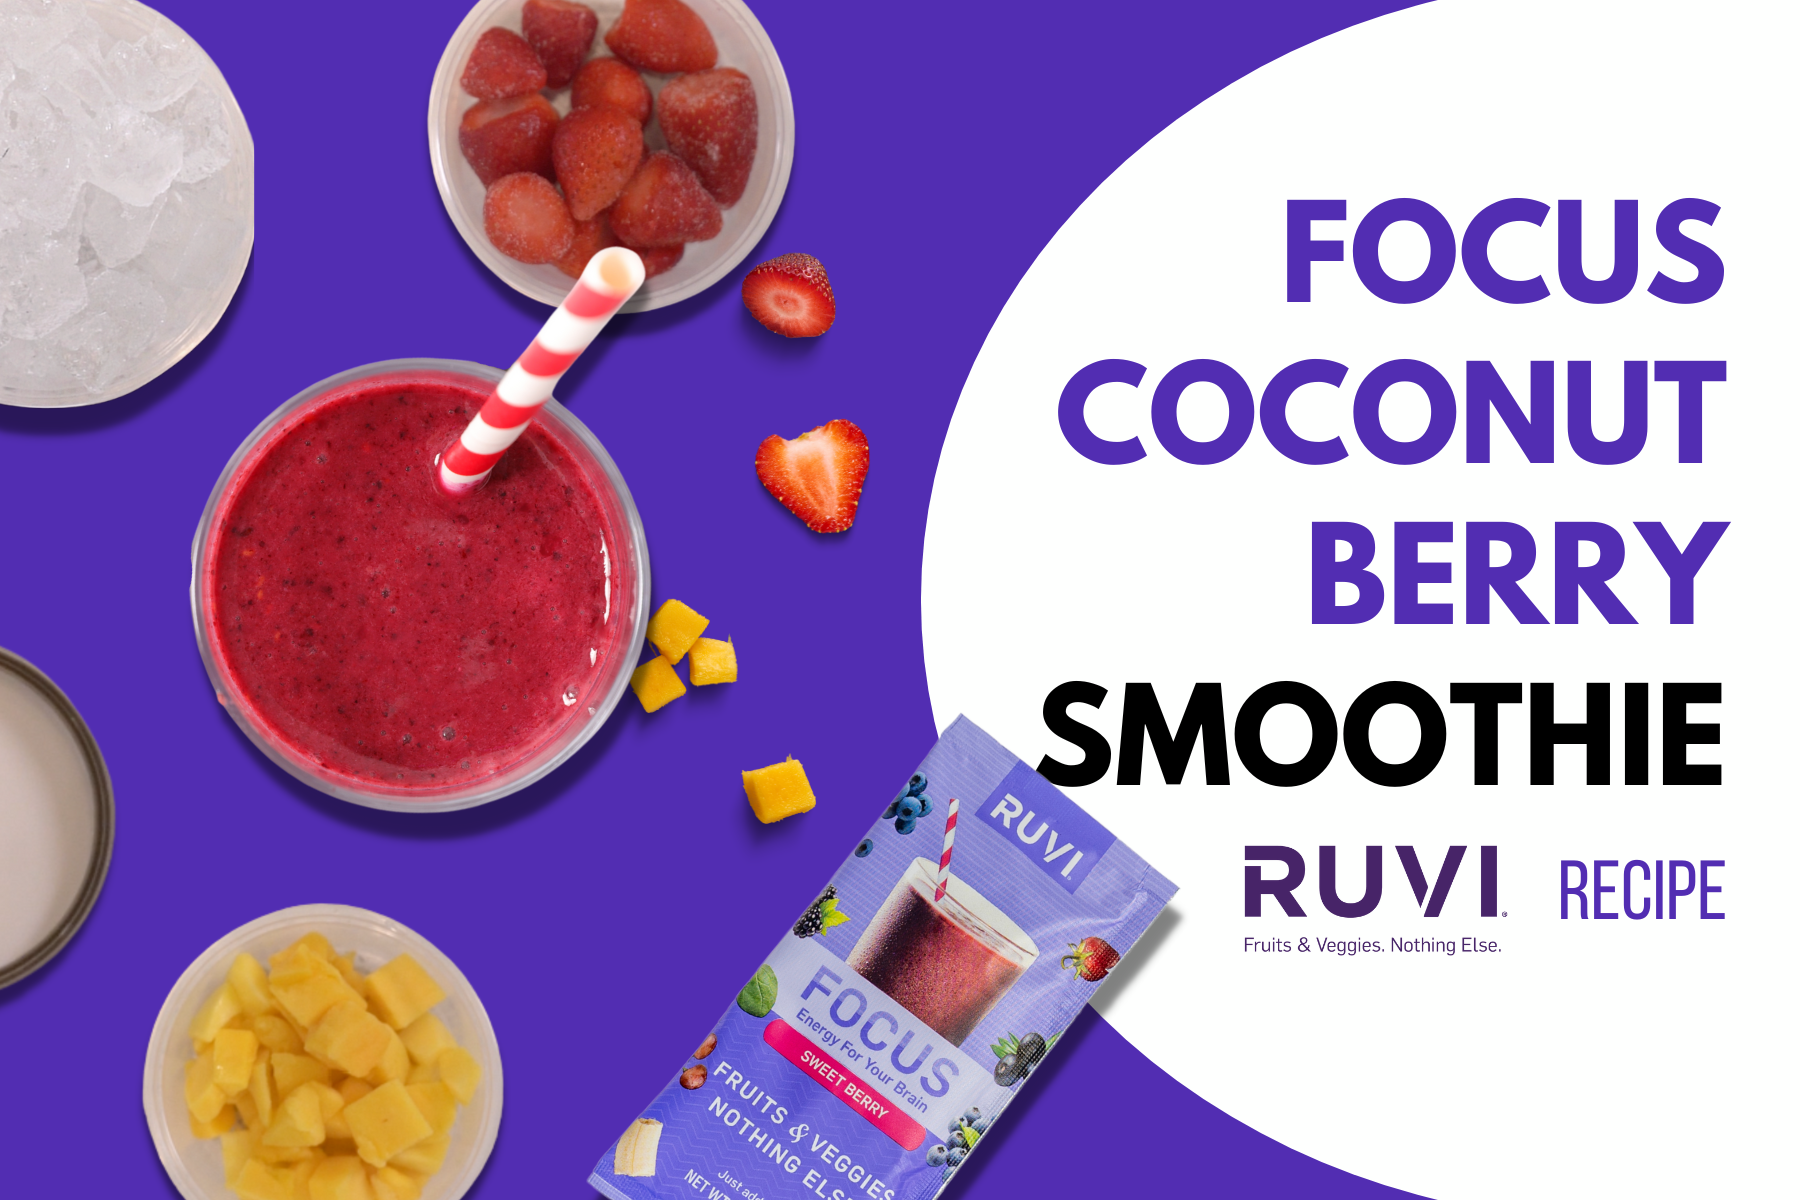 Ruvi Focus Coconut Berry Smoothie berries, mango, coconut smoothie recipe